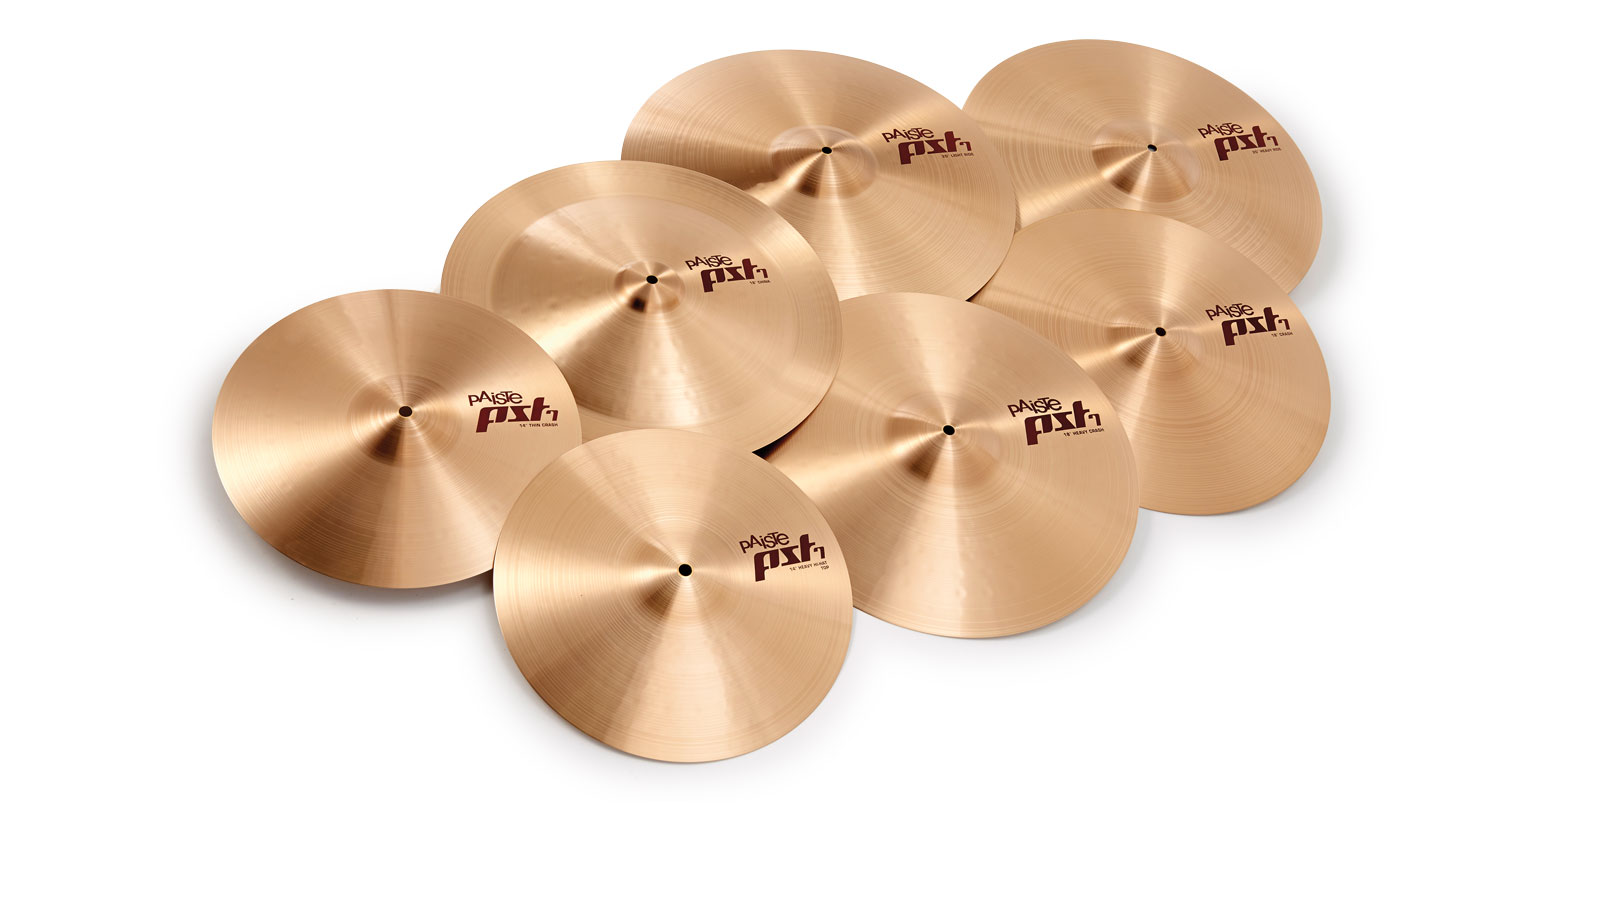 Paiste PST7 Series cymbals review | MusicRadar